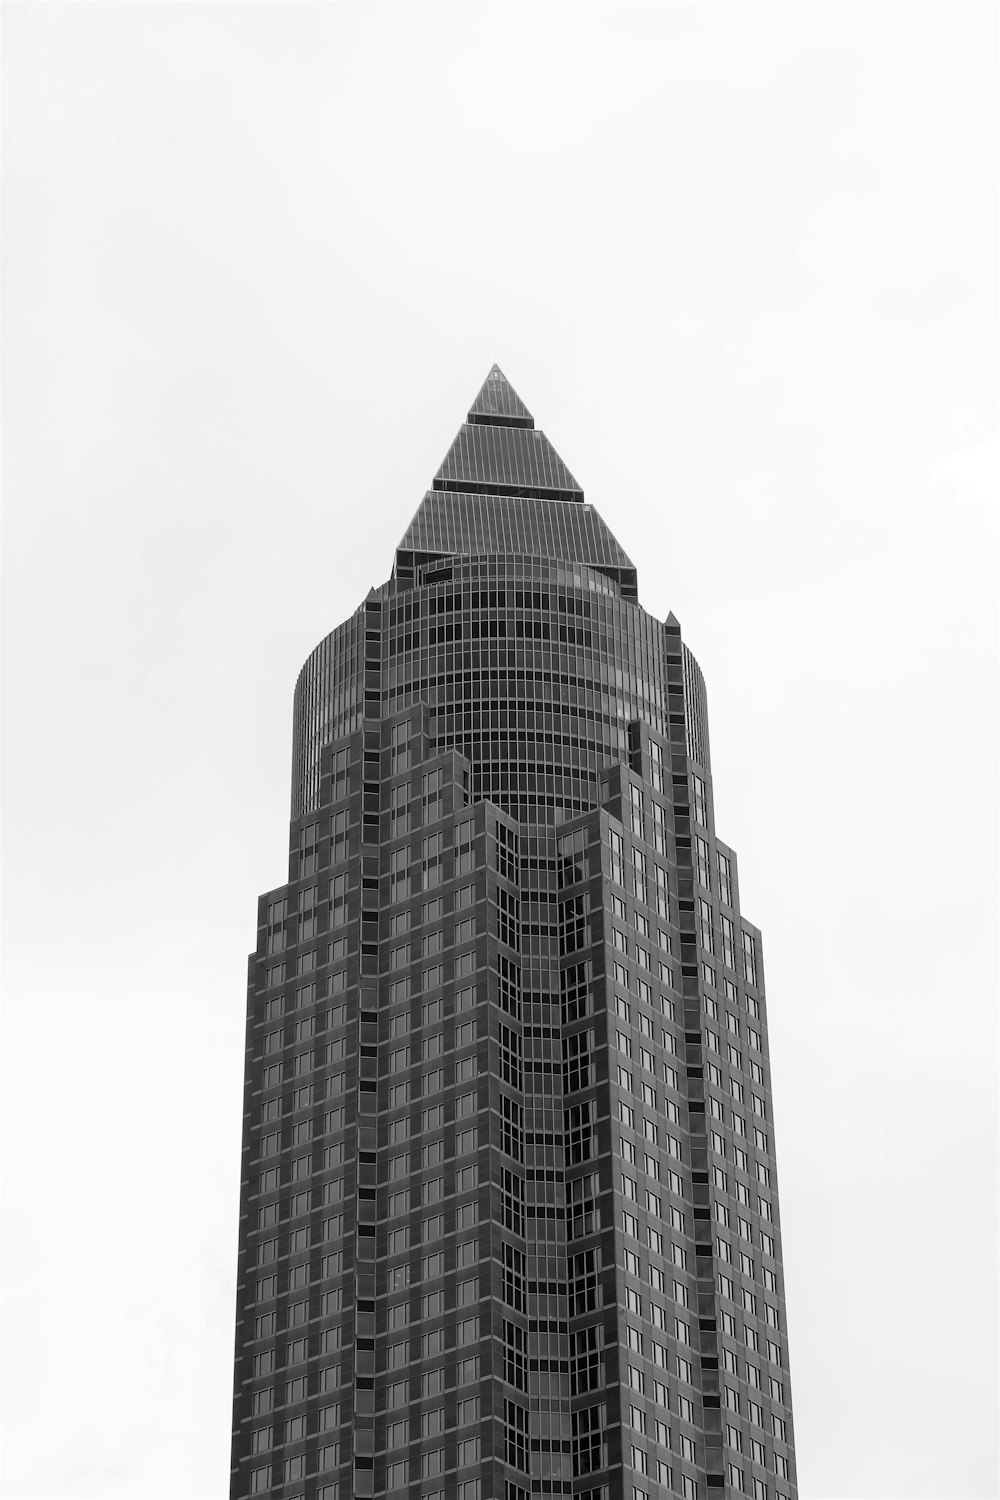 edifício de betão preto e branco